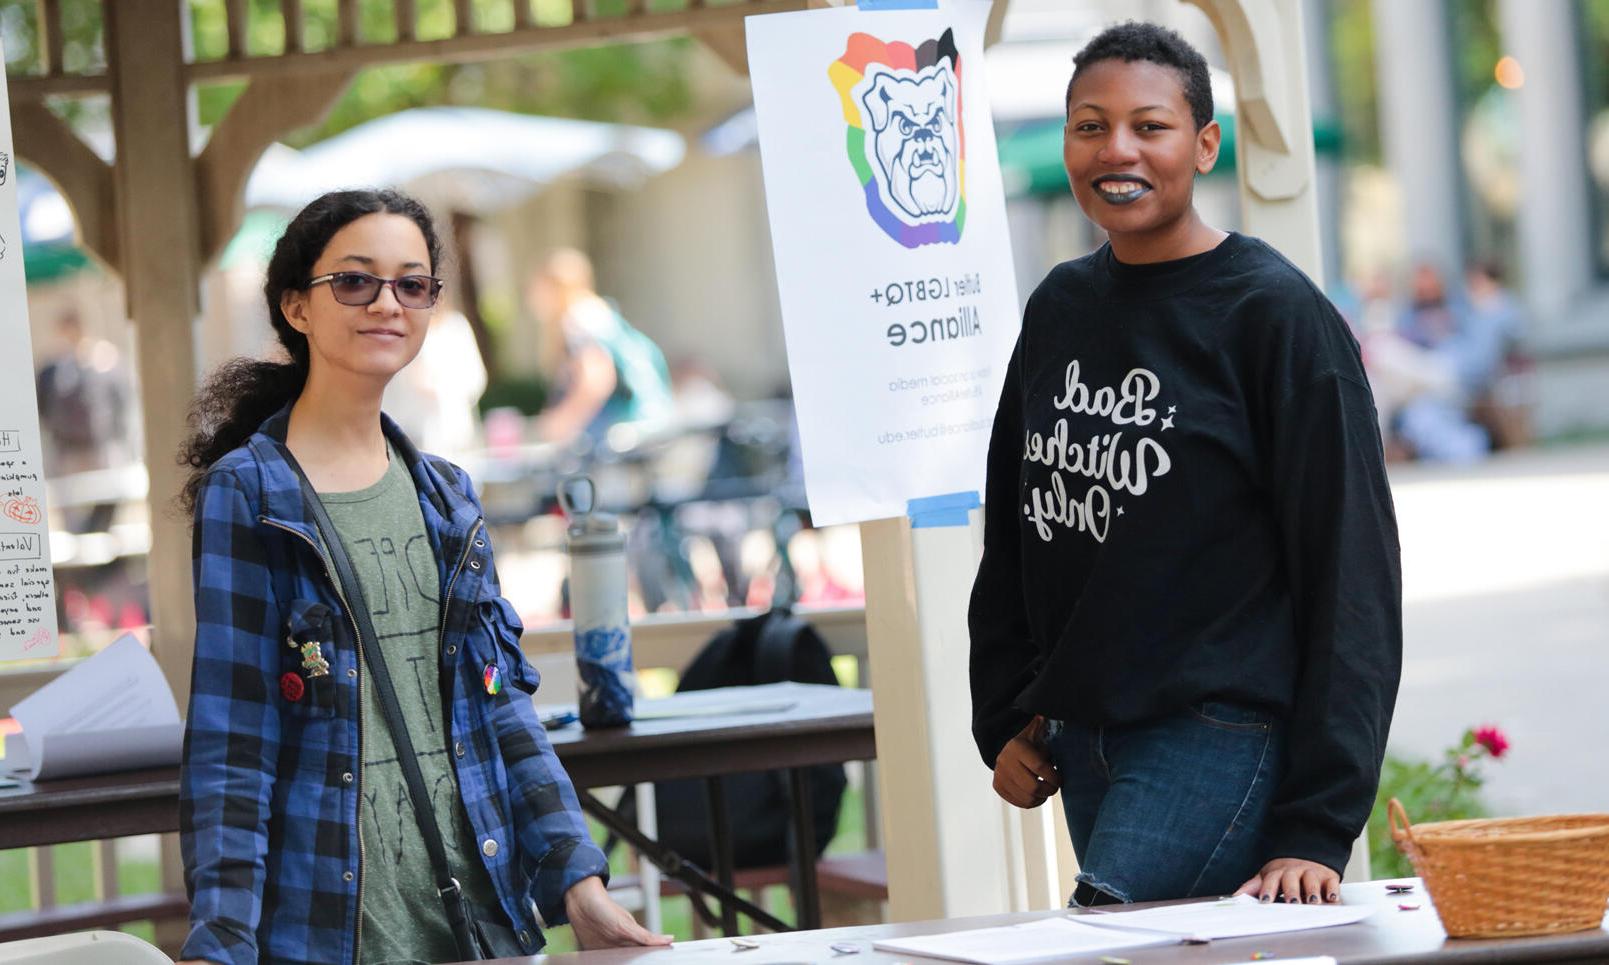 两个LGBTQ+联盟的成员拿着那个牌子, 一个穿着黑色运动衫，上面写着“只允许坏女巫”, 另一个戴着墨镜，穿着蓝黑相间的格子衬衫